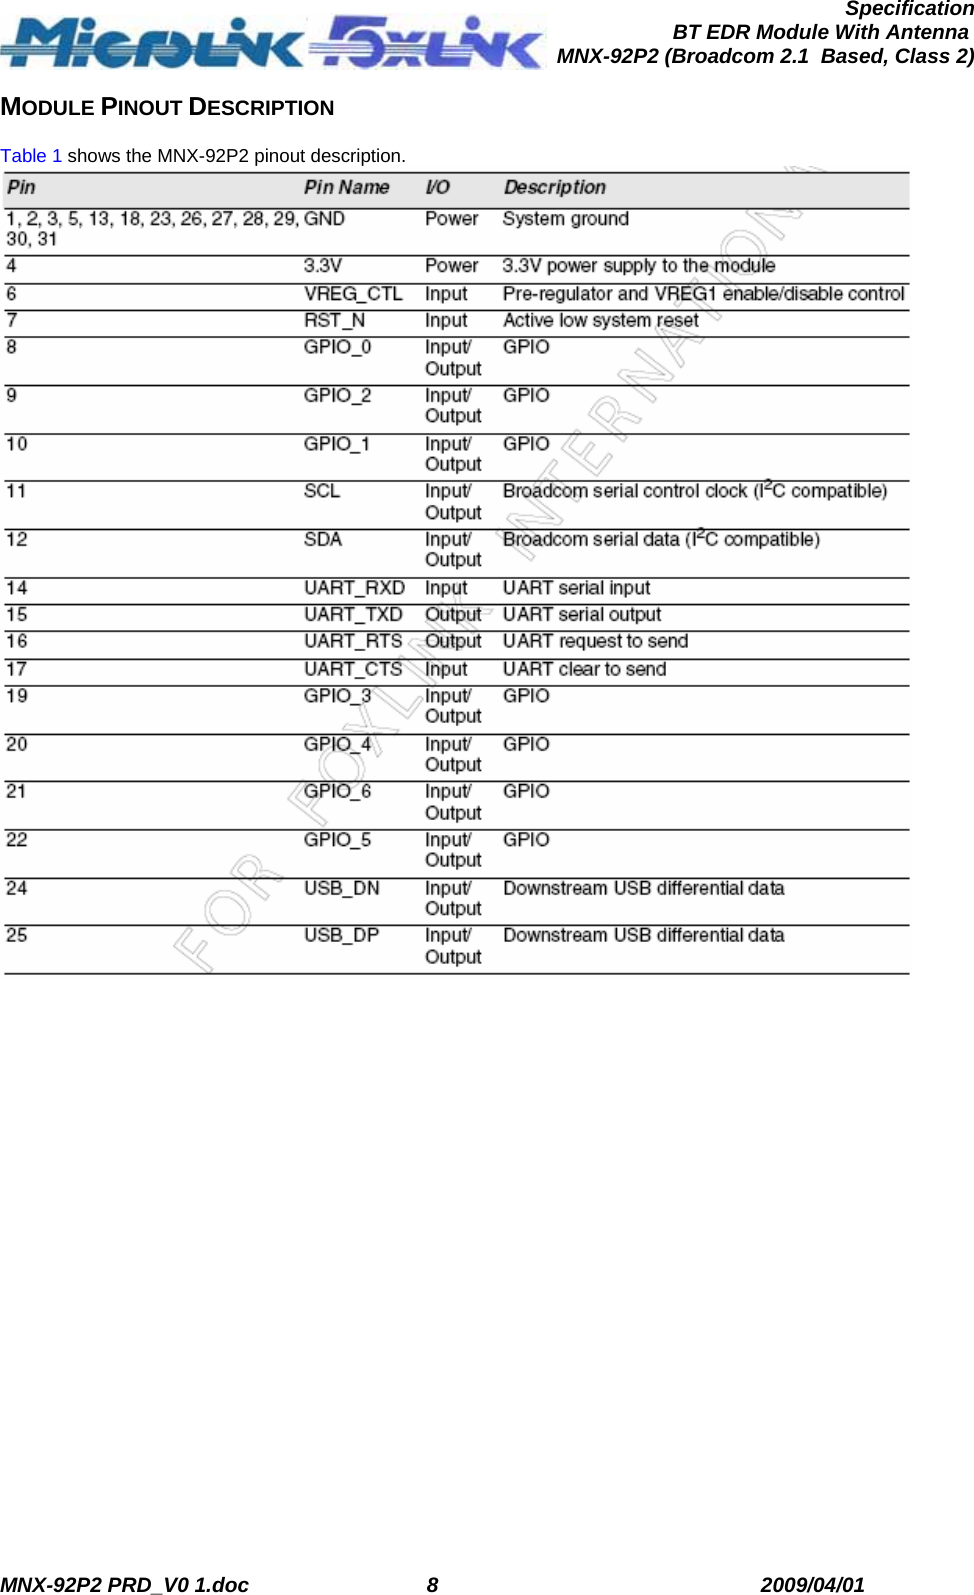  MNX-92P2 PRD_V0 1.doc  8  2009/04/01      SpecificationBT EDR Module With Antenna MNX-92P2 (Broadcom 2.1  Based, Class 2)MODULE PINOUT DESCRIPTION  Table 1 shows the MNX-92P2 pinout description.  